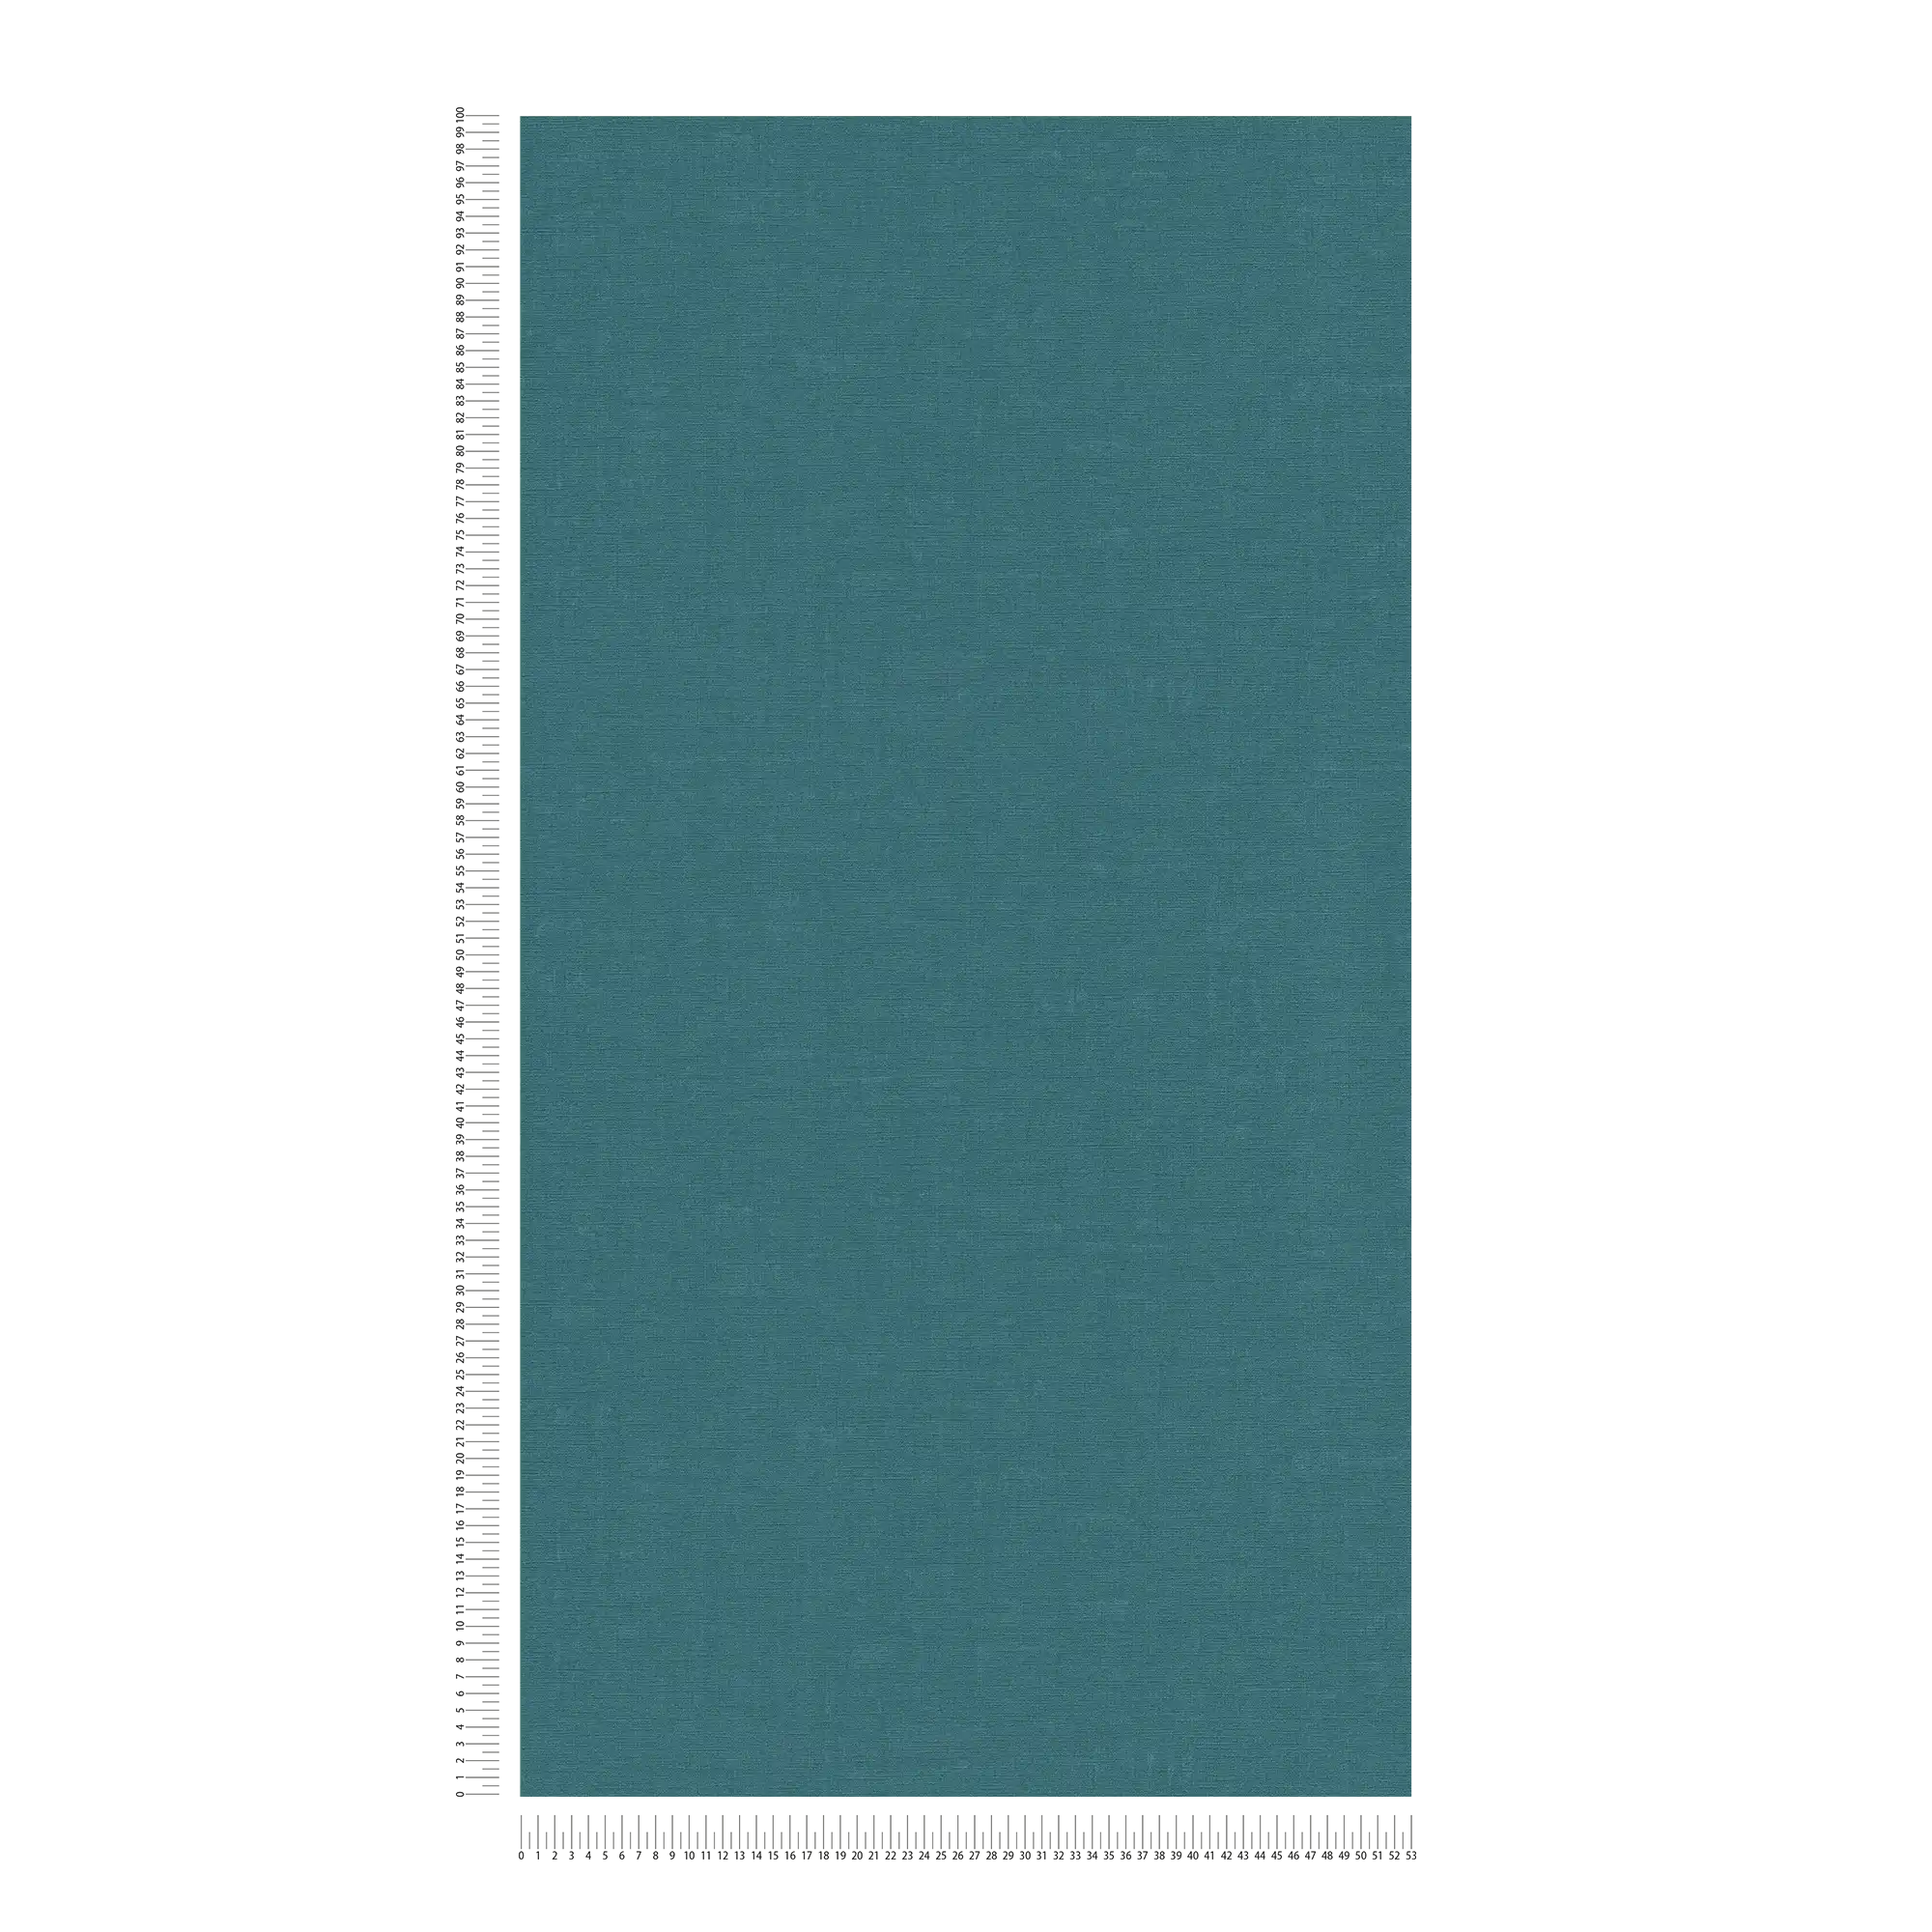             Carta da parati in tessuto non tessuto a tinta unita con effetto screziato - blu, verde
        